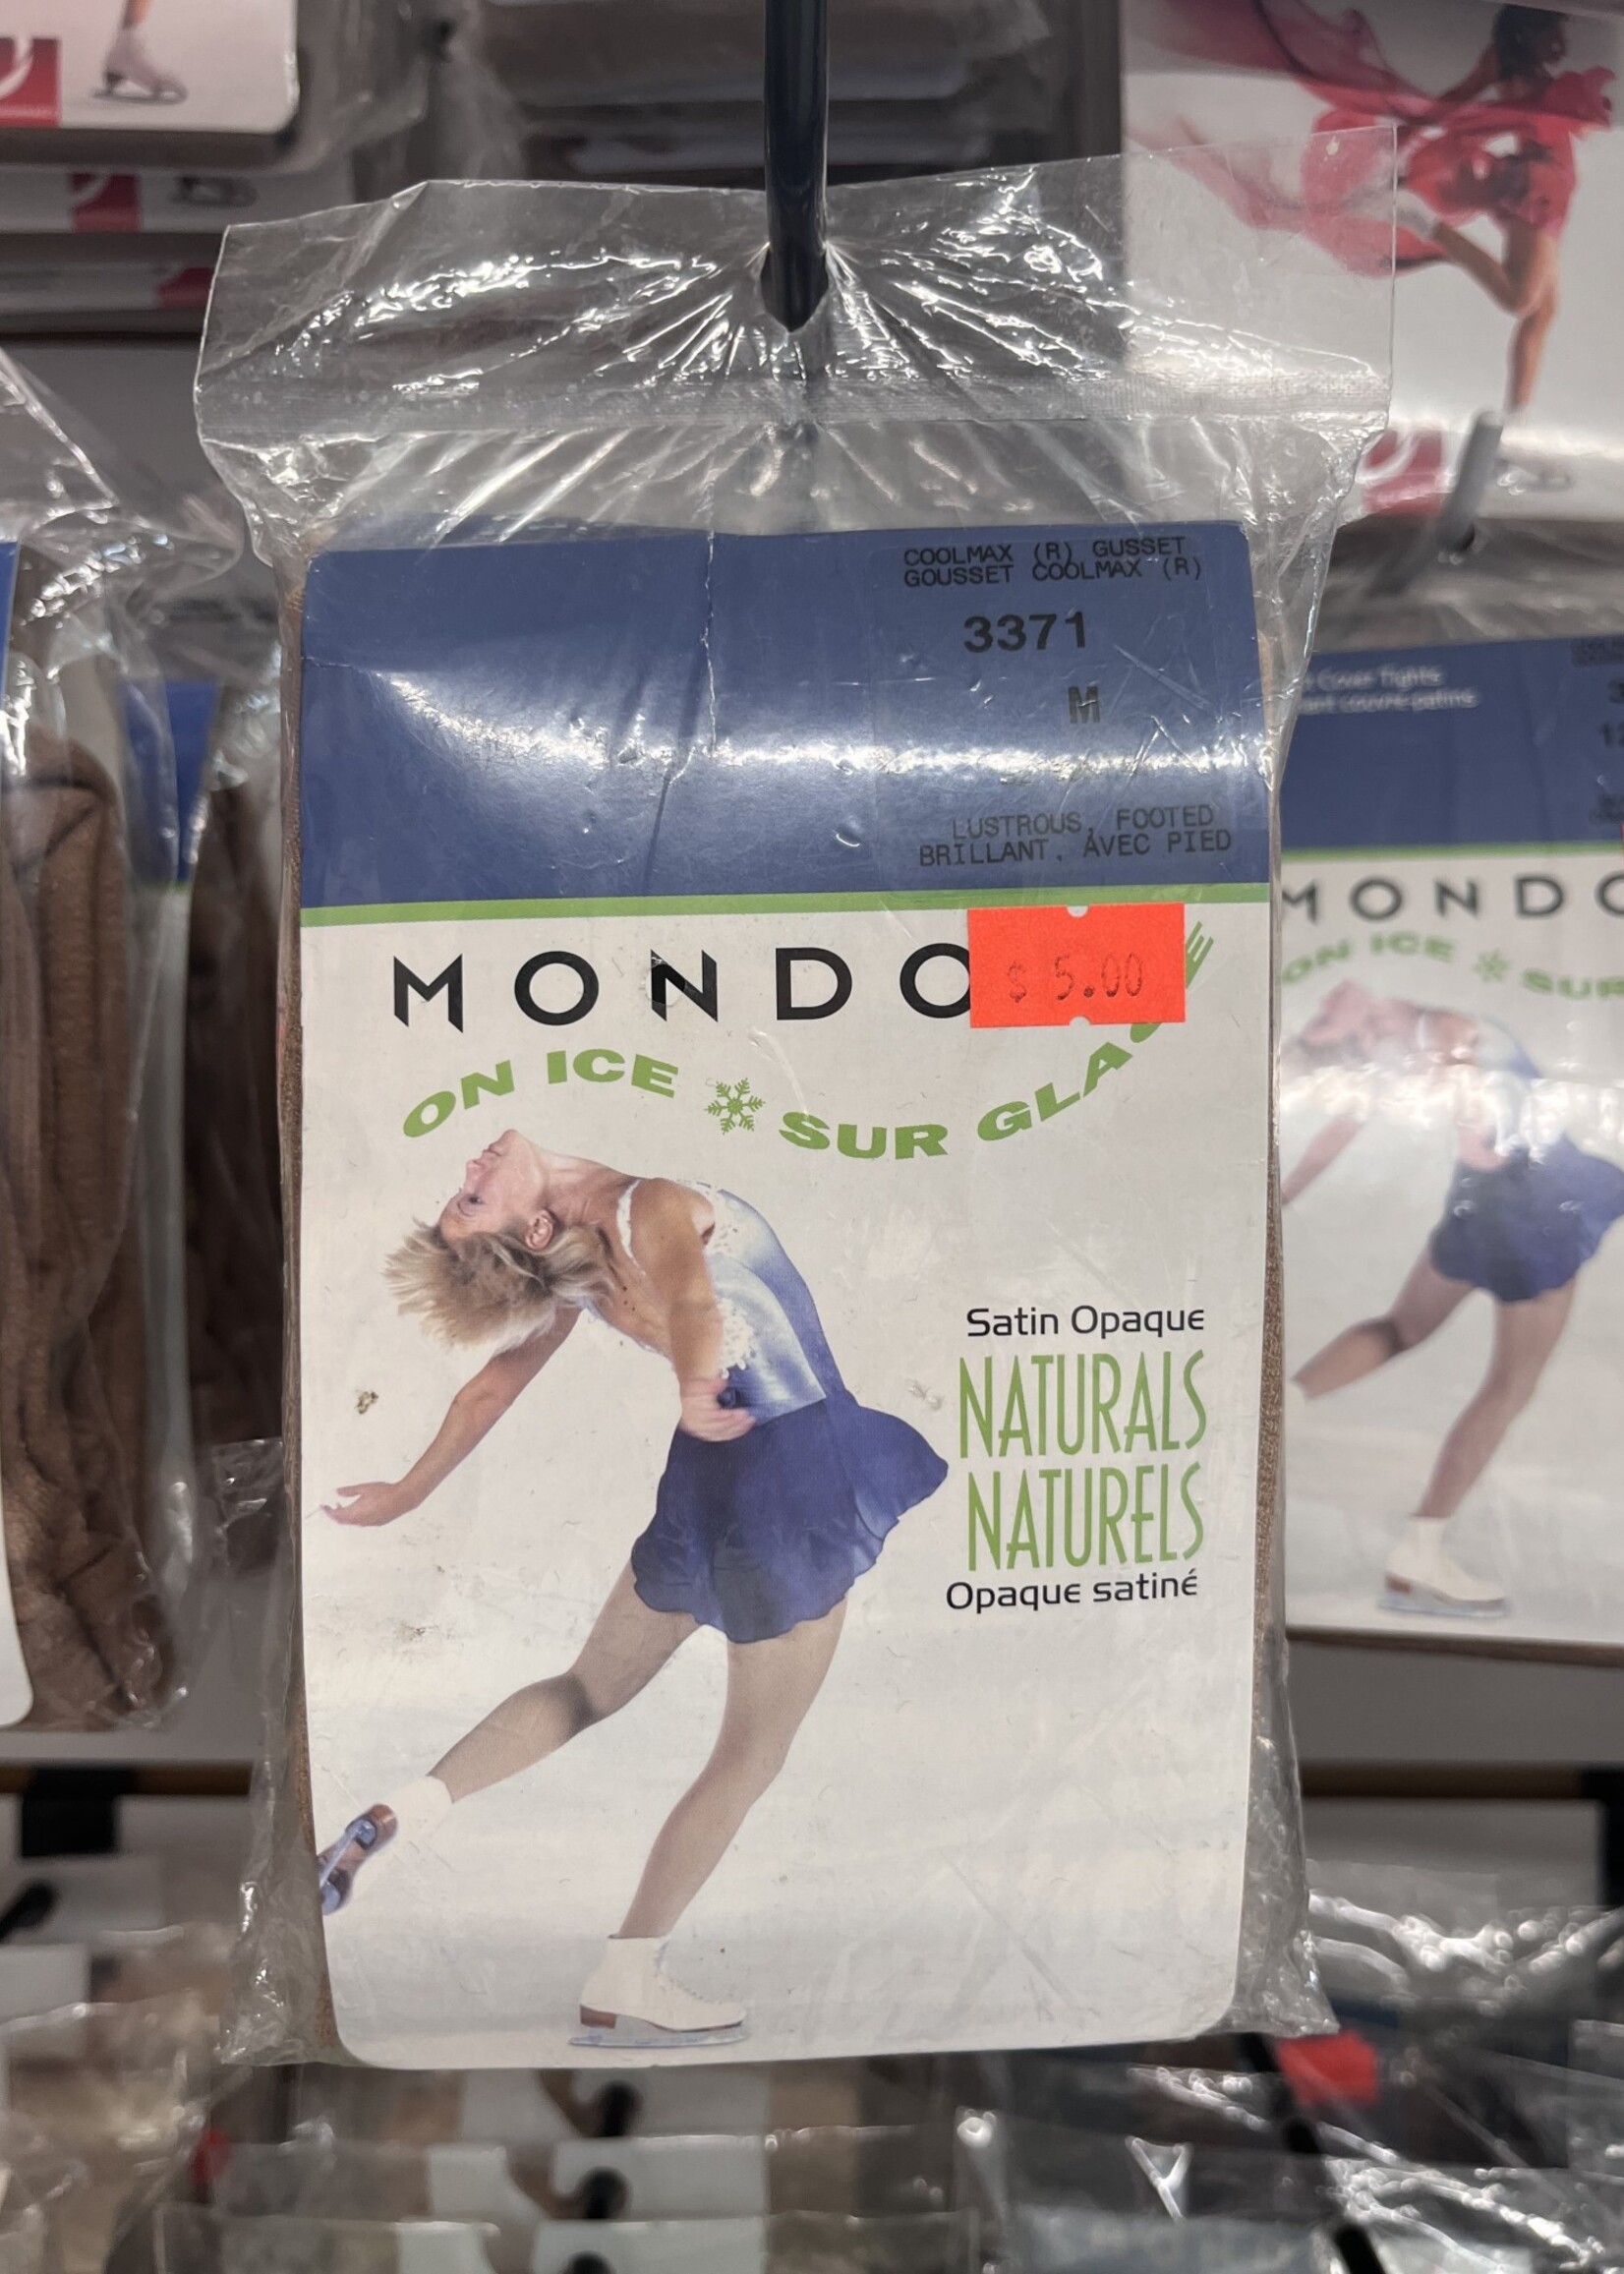 Mondor 3371 Mondor over the Boot